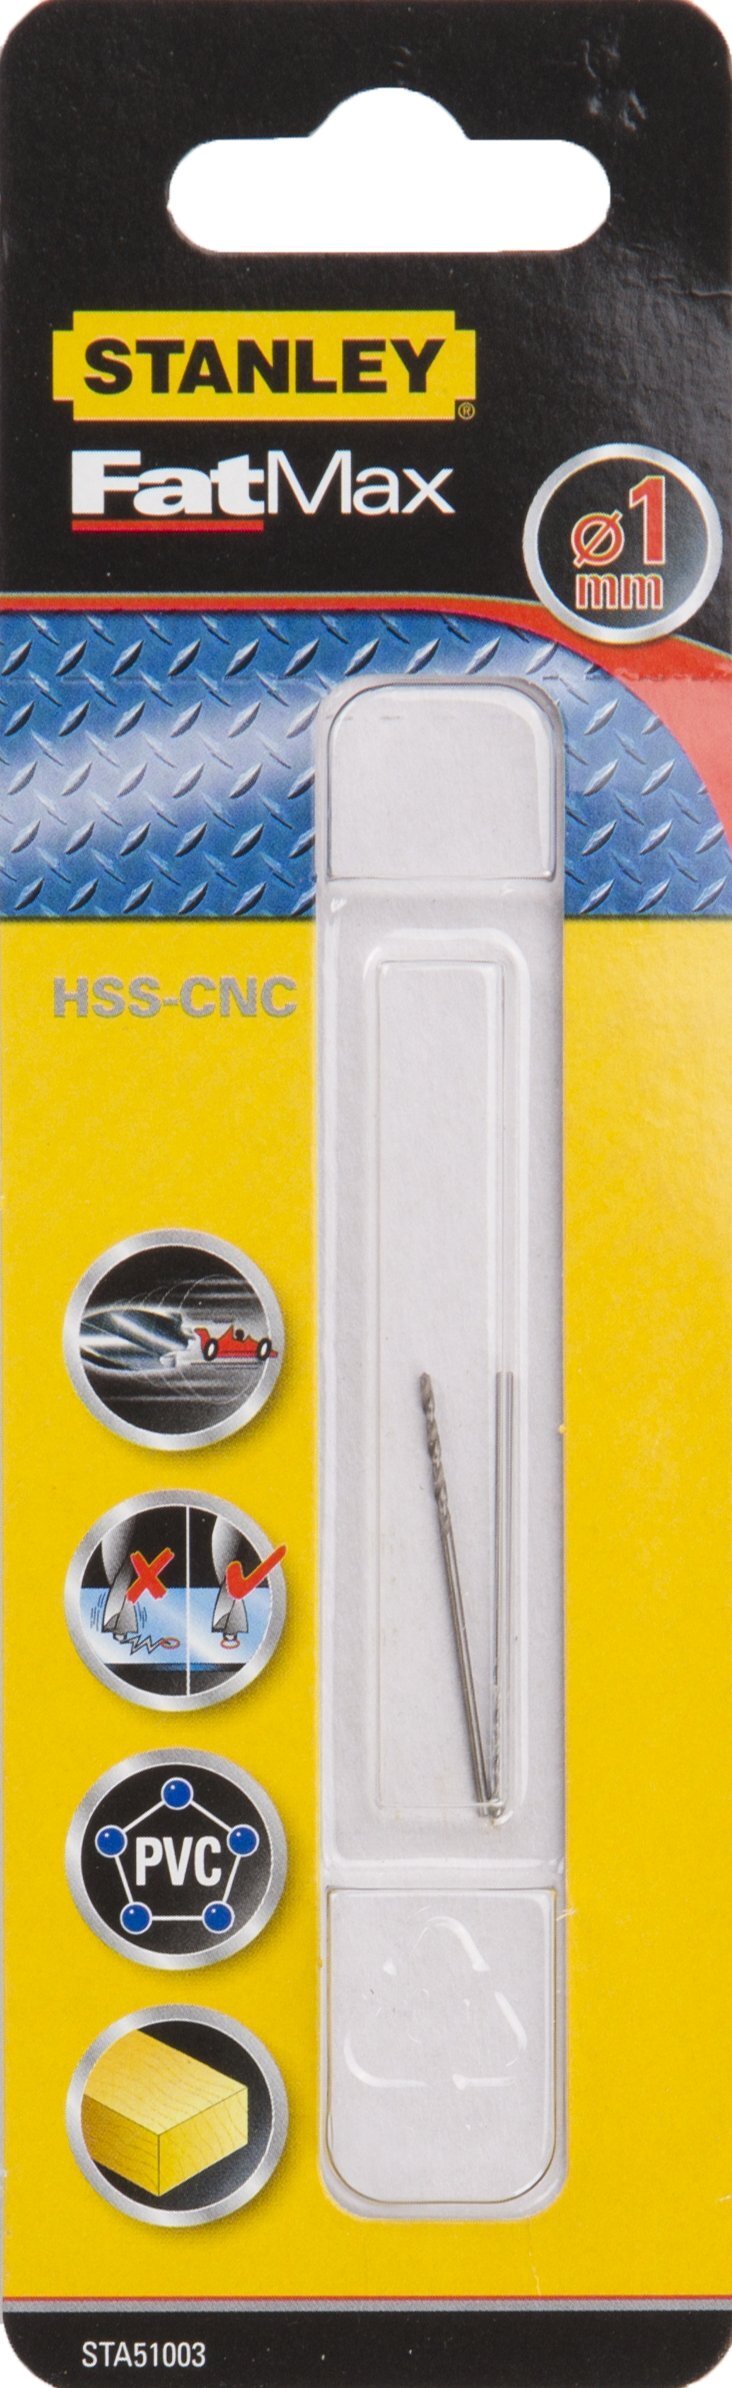 Stanley Fatmax metaalboor 1 mm (2 stuks) HSS-CNC STA51003